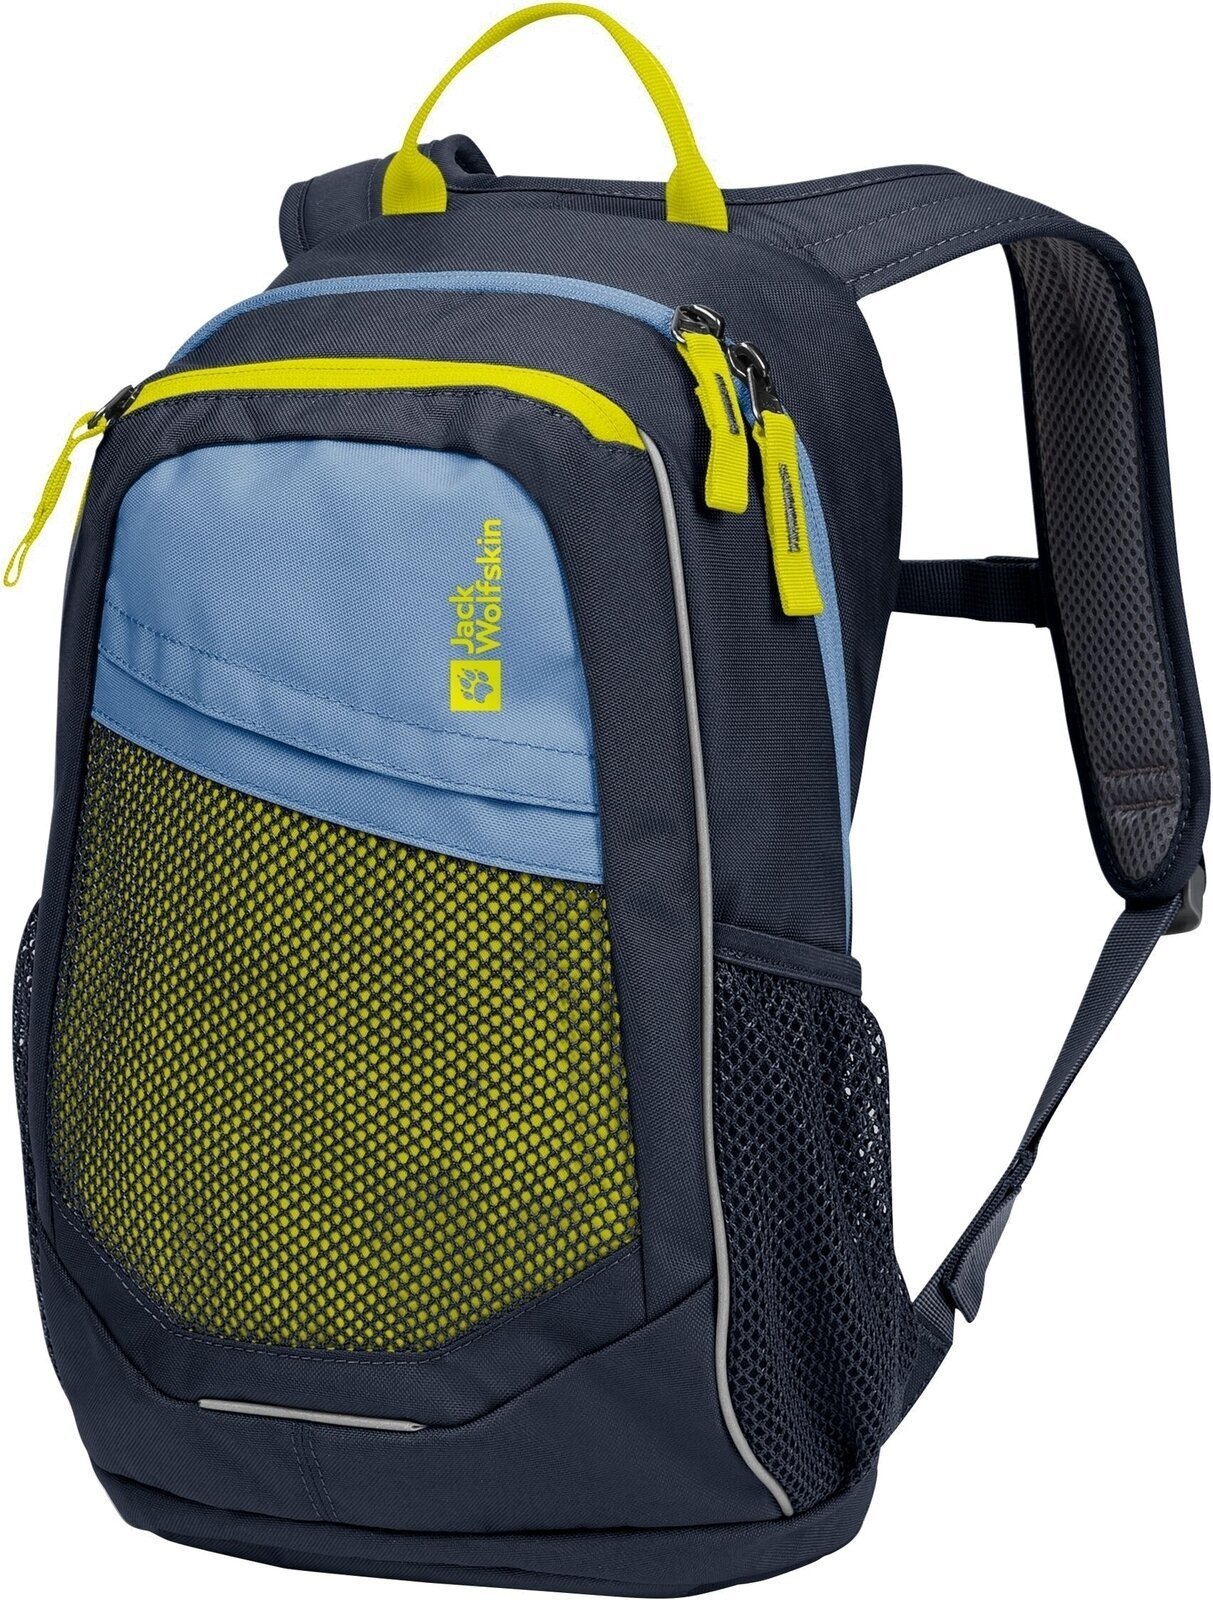 Outdoor Backpack Jack Wolfskin Track Jack Night Blue Outdoor Backpack